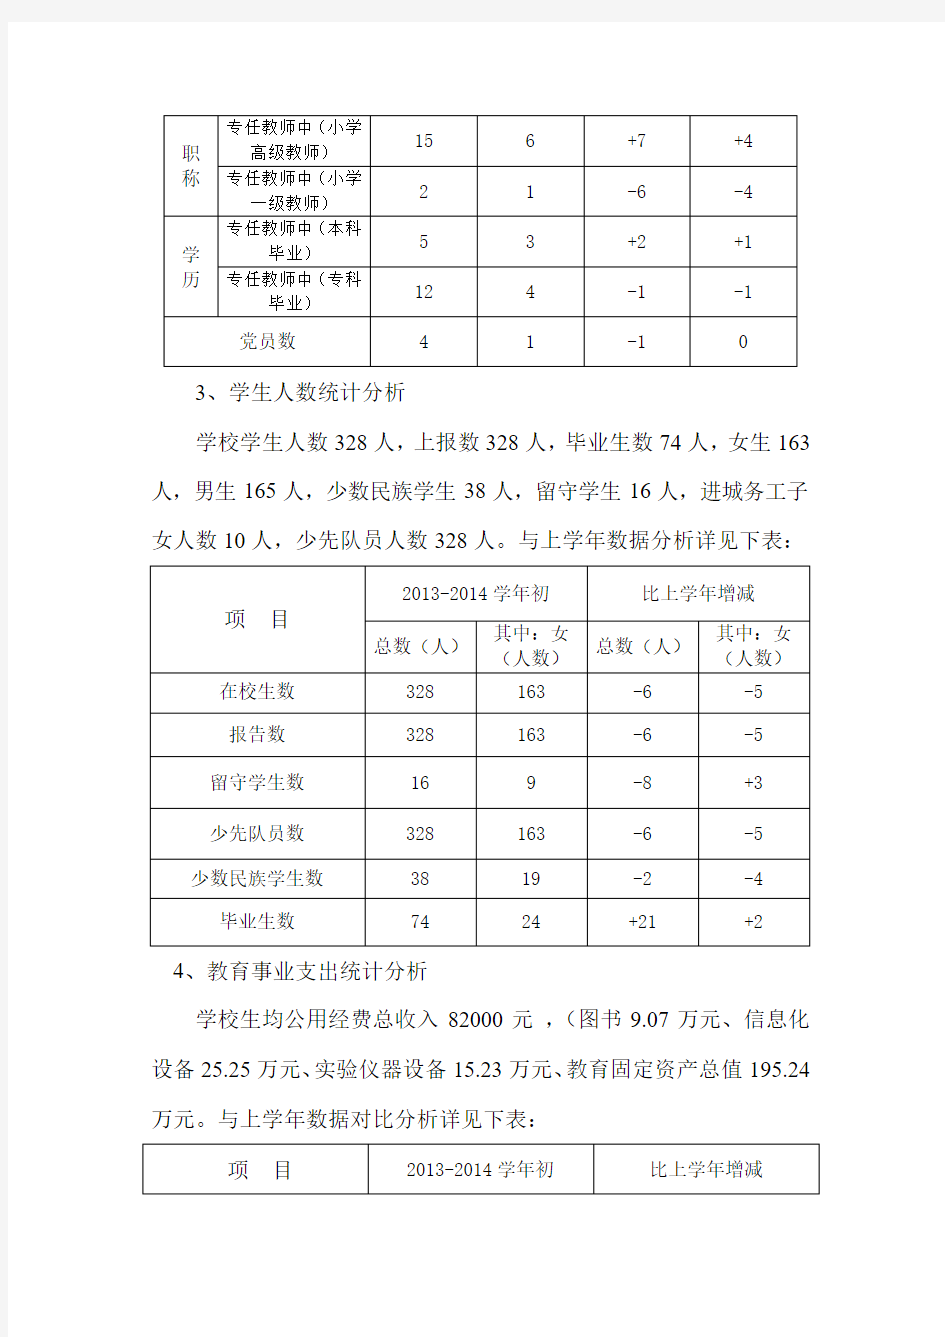 小腮小学2013-2014学年初教育事业统计分析报告